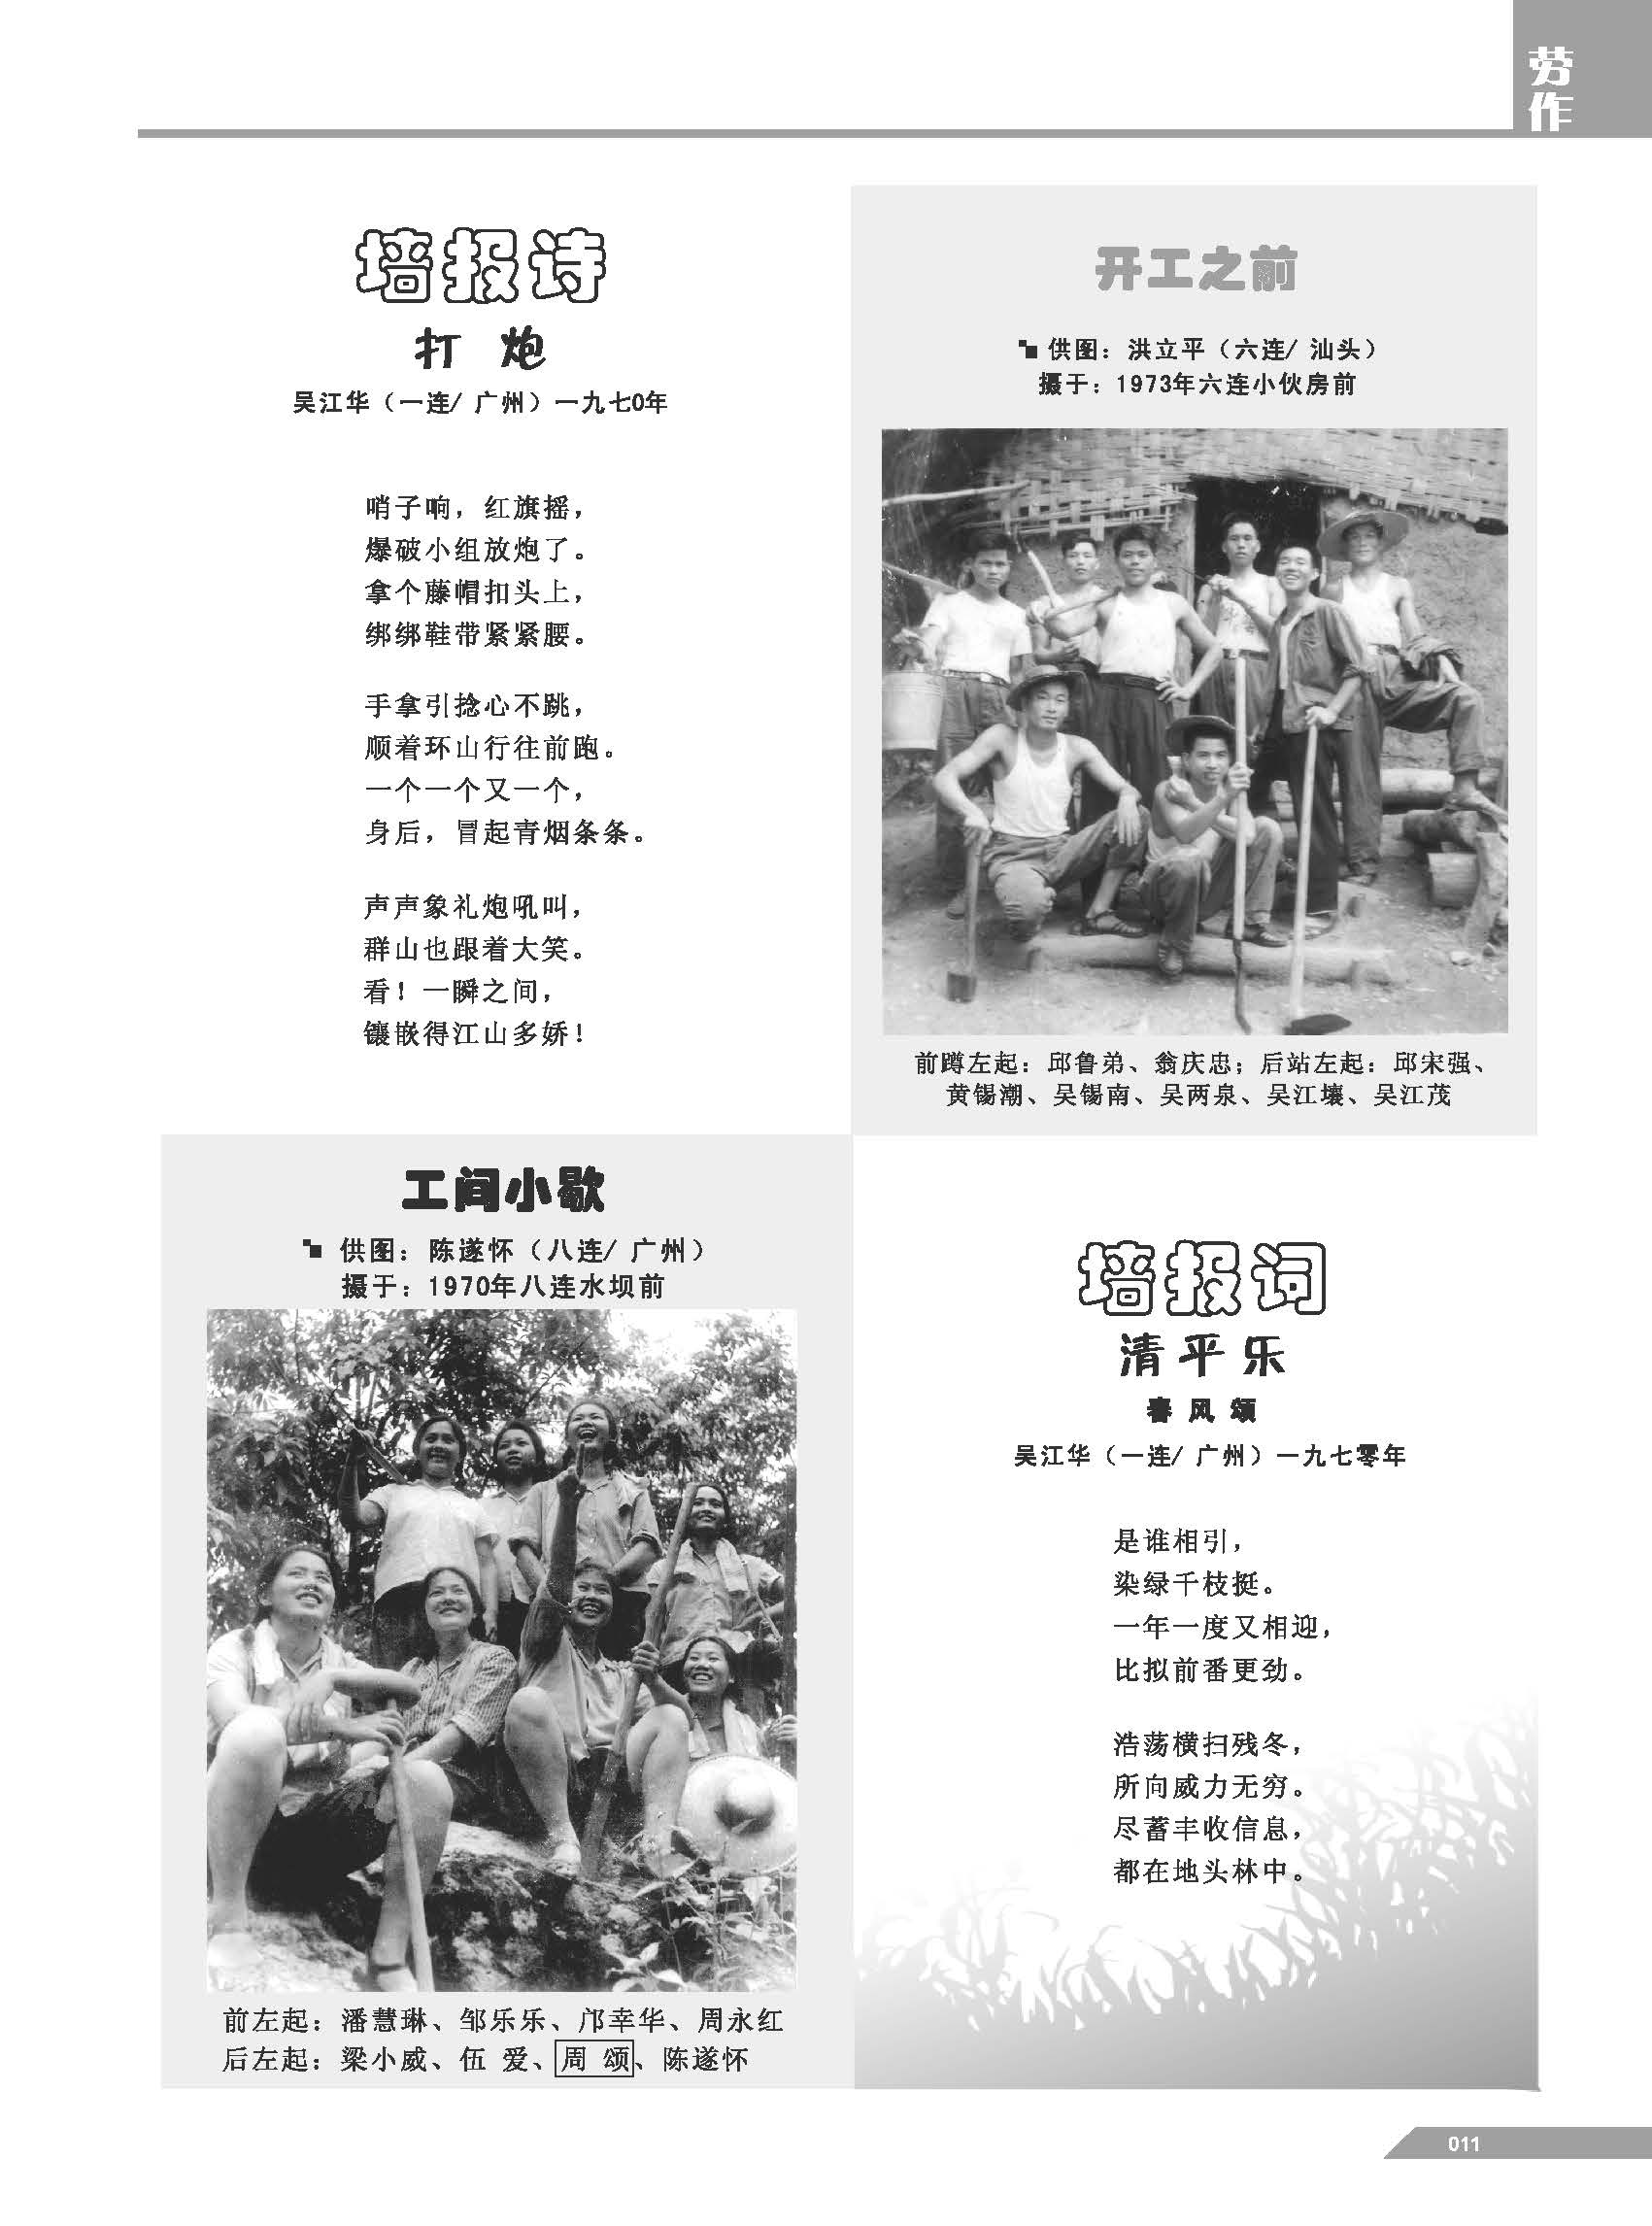 黄岭农场青春影踪内页9-16 3.jpg